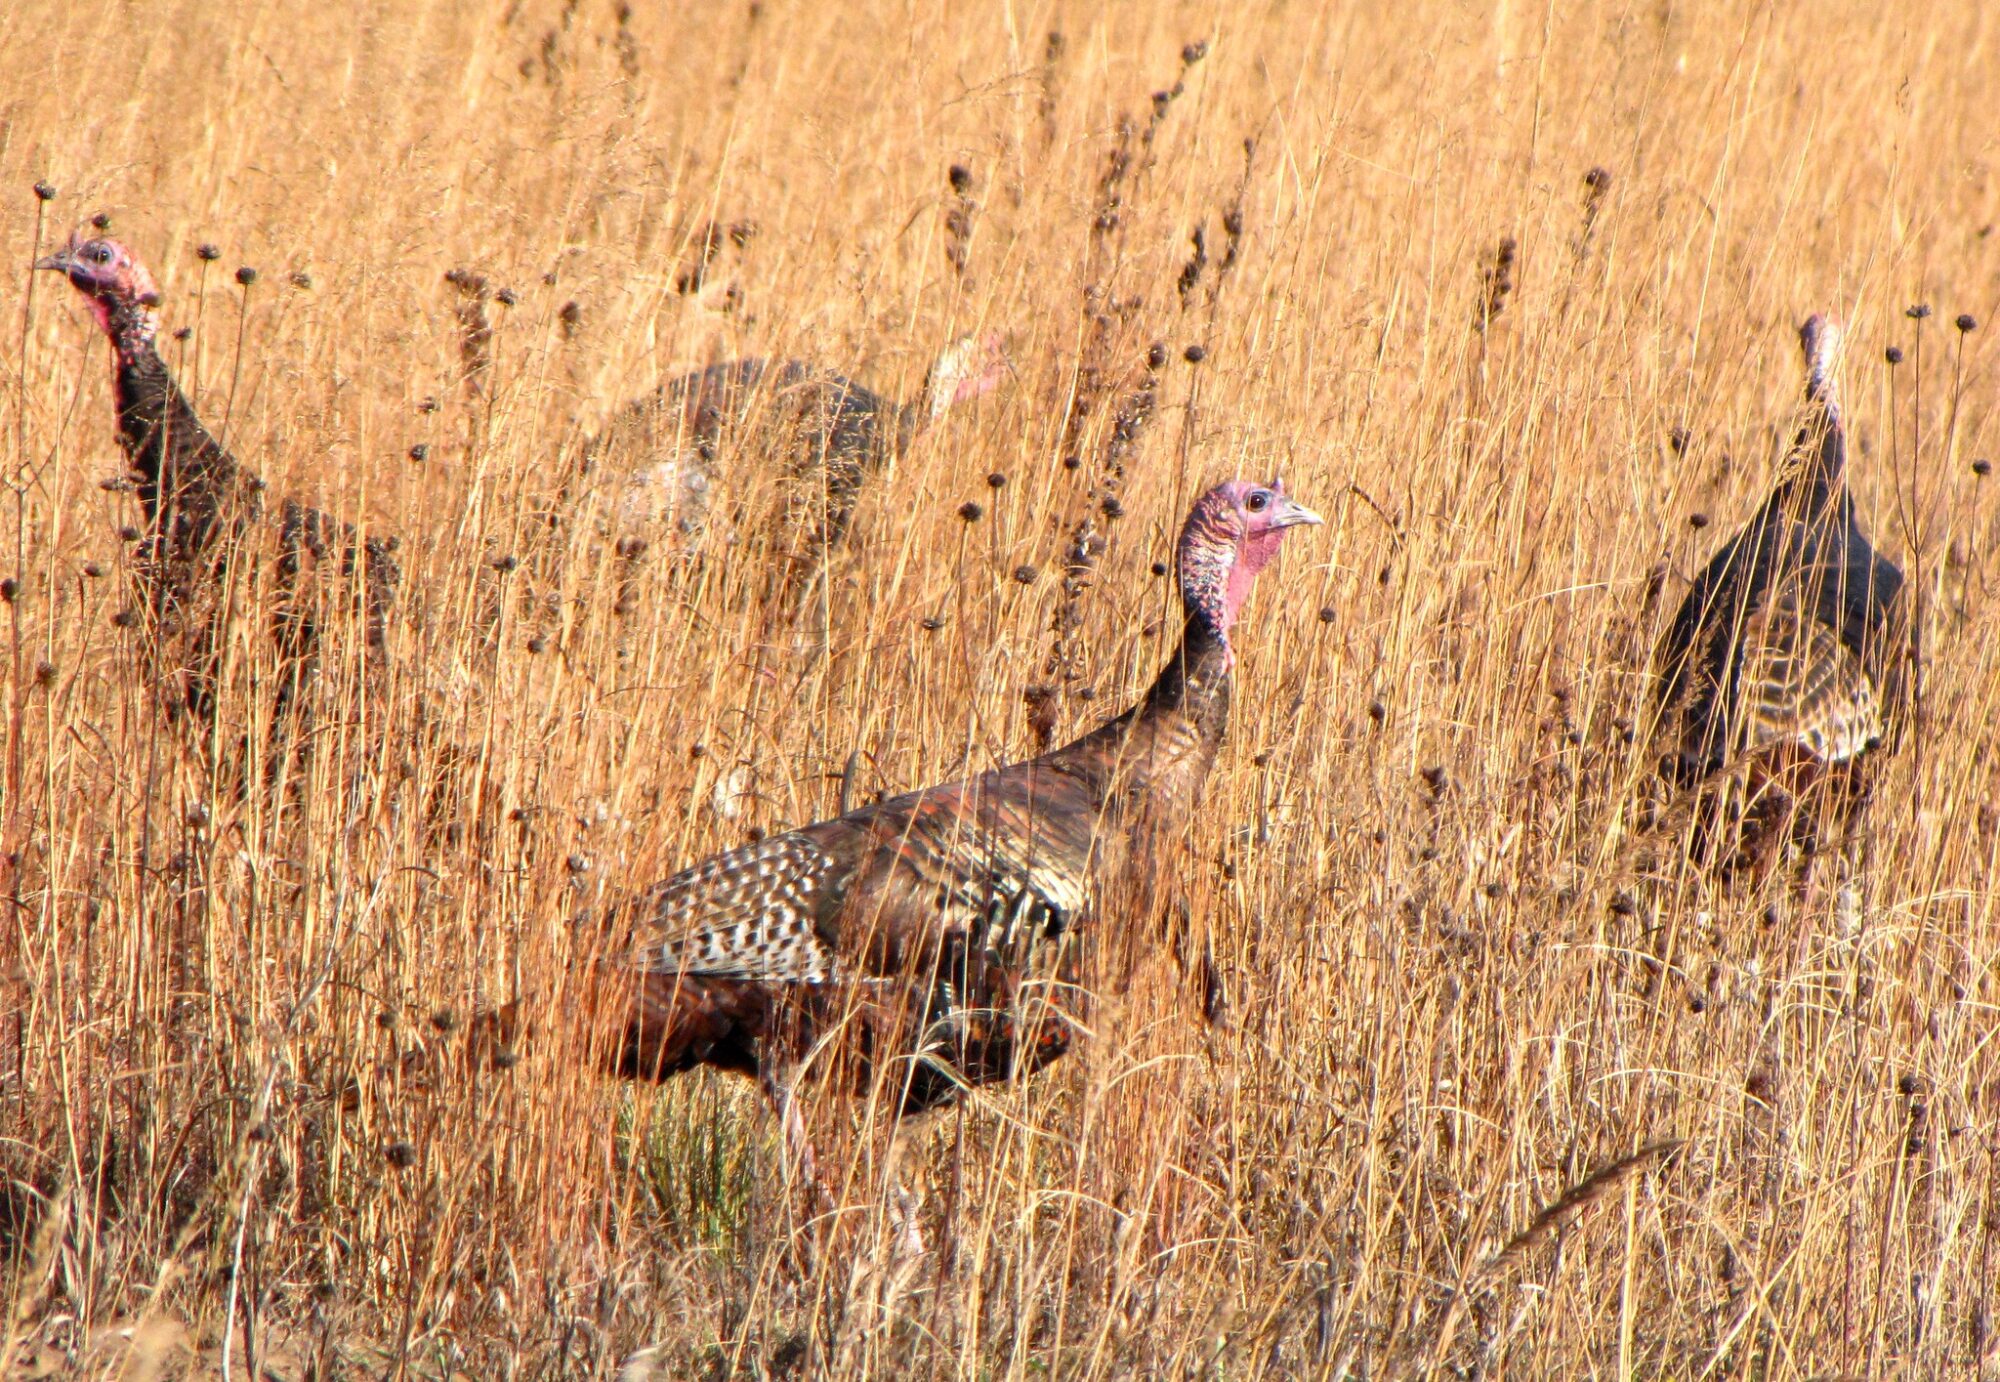 What's causing the wild turkey population decline?